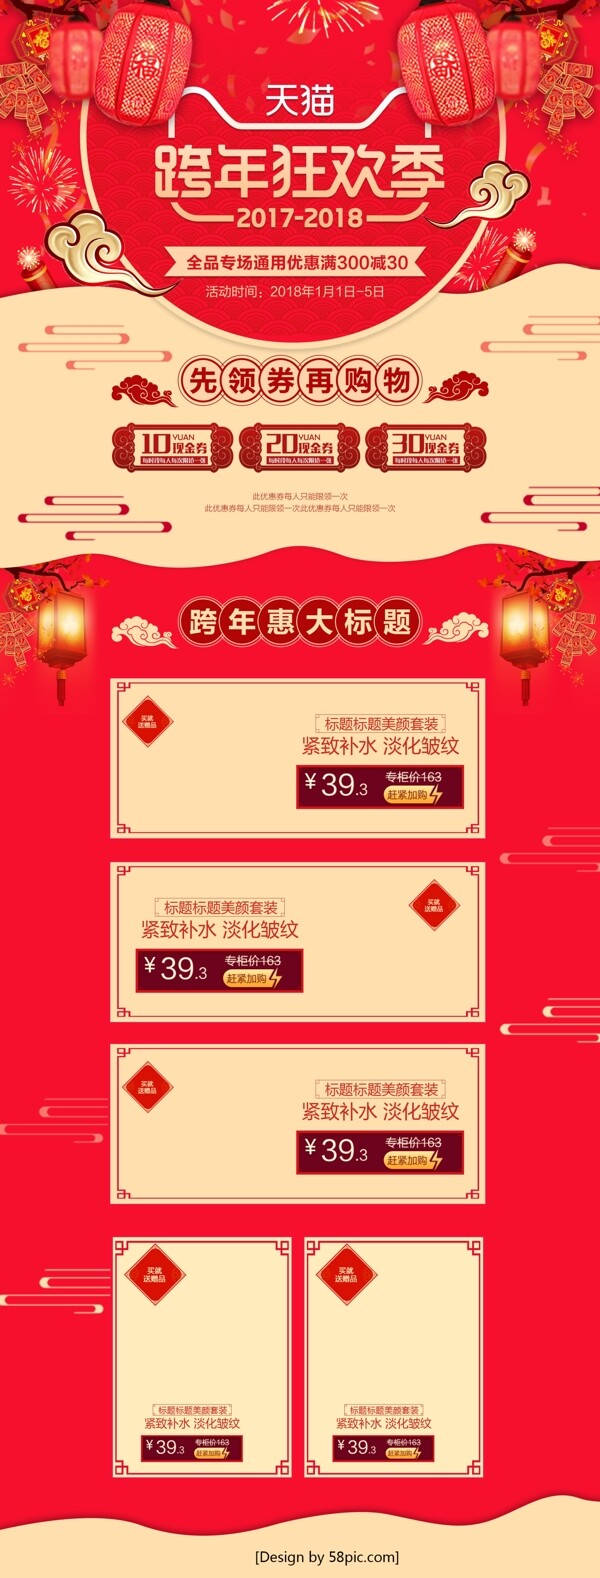 红色中国风跨年狂欢季淘宝美妆首页